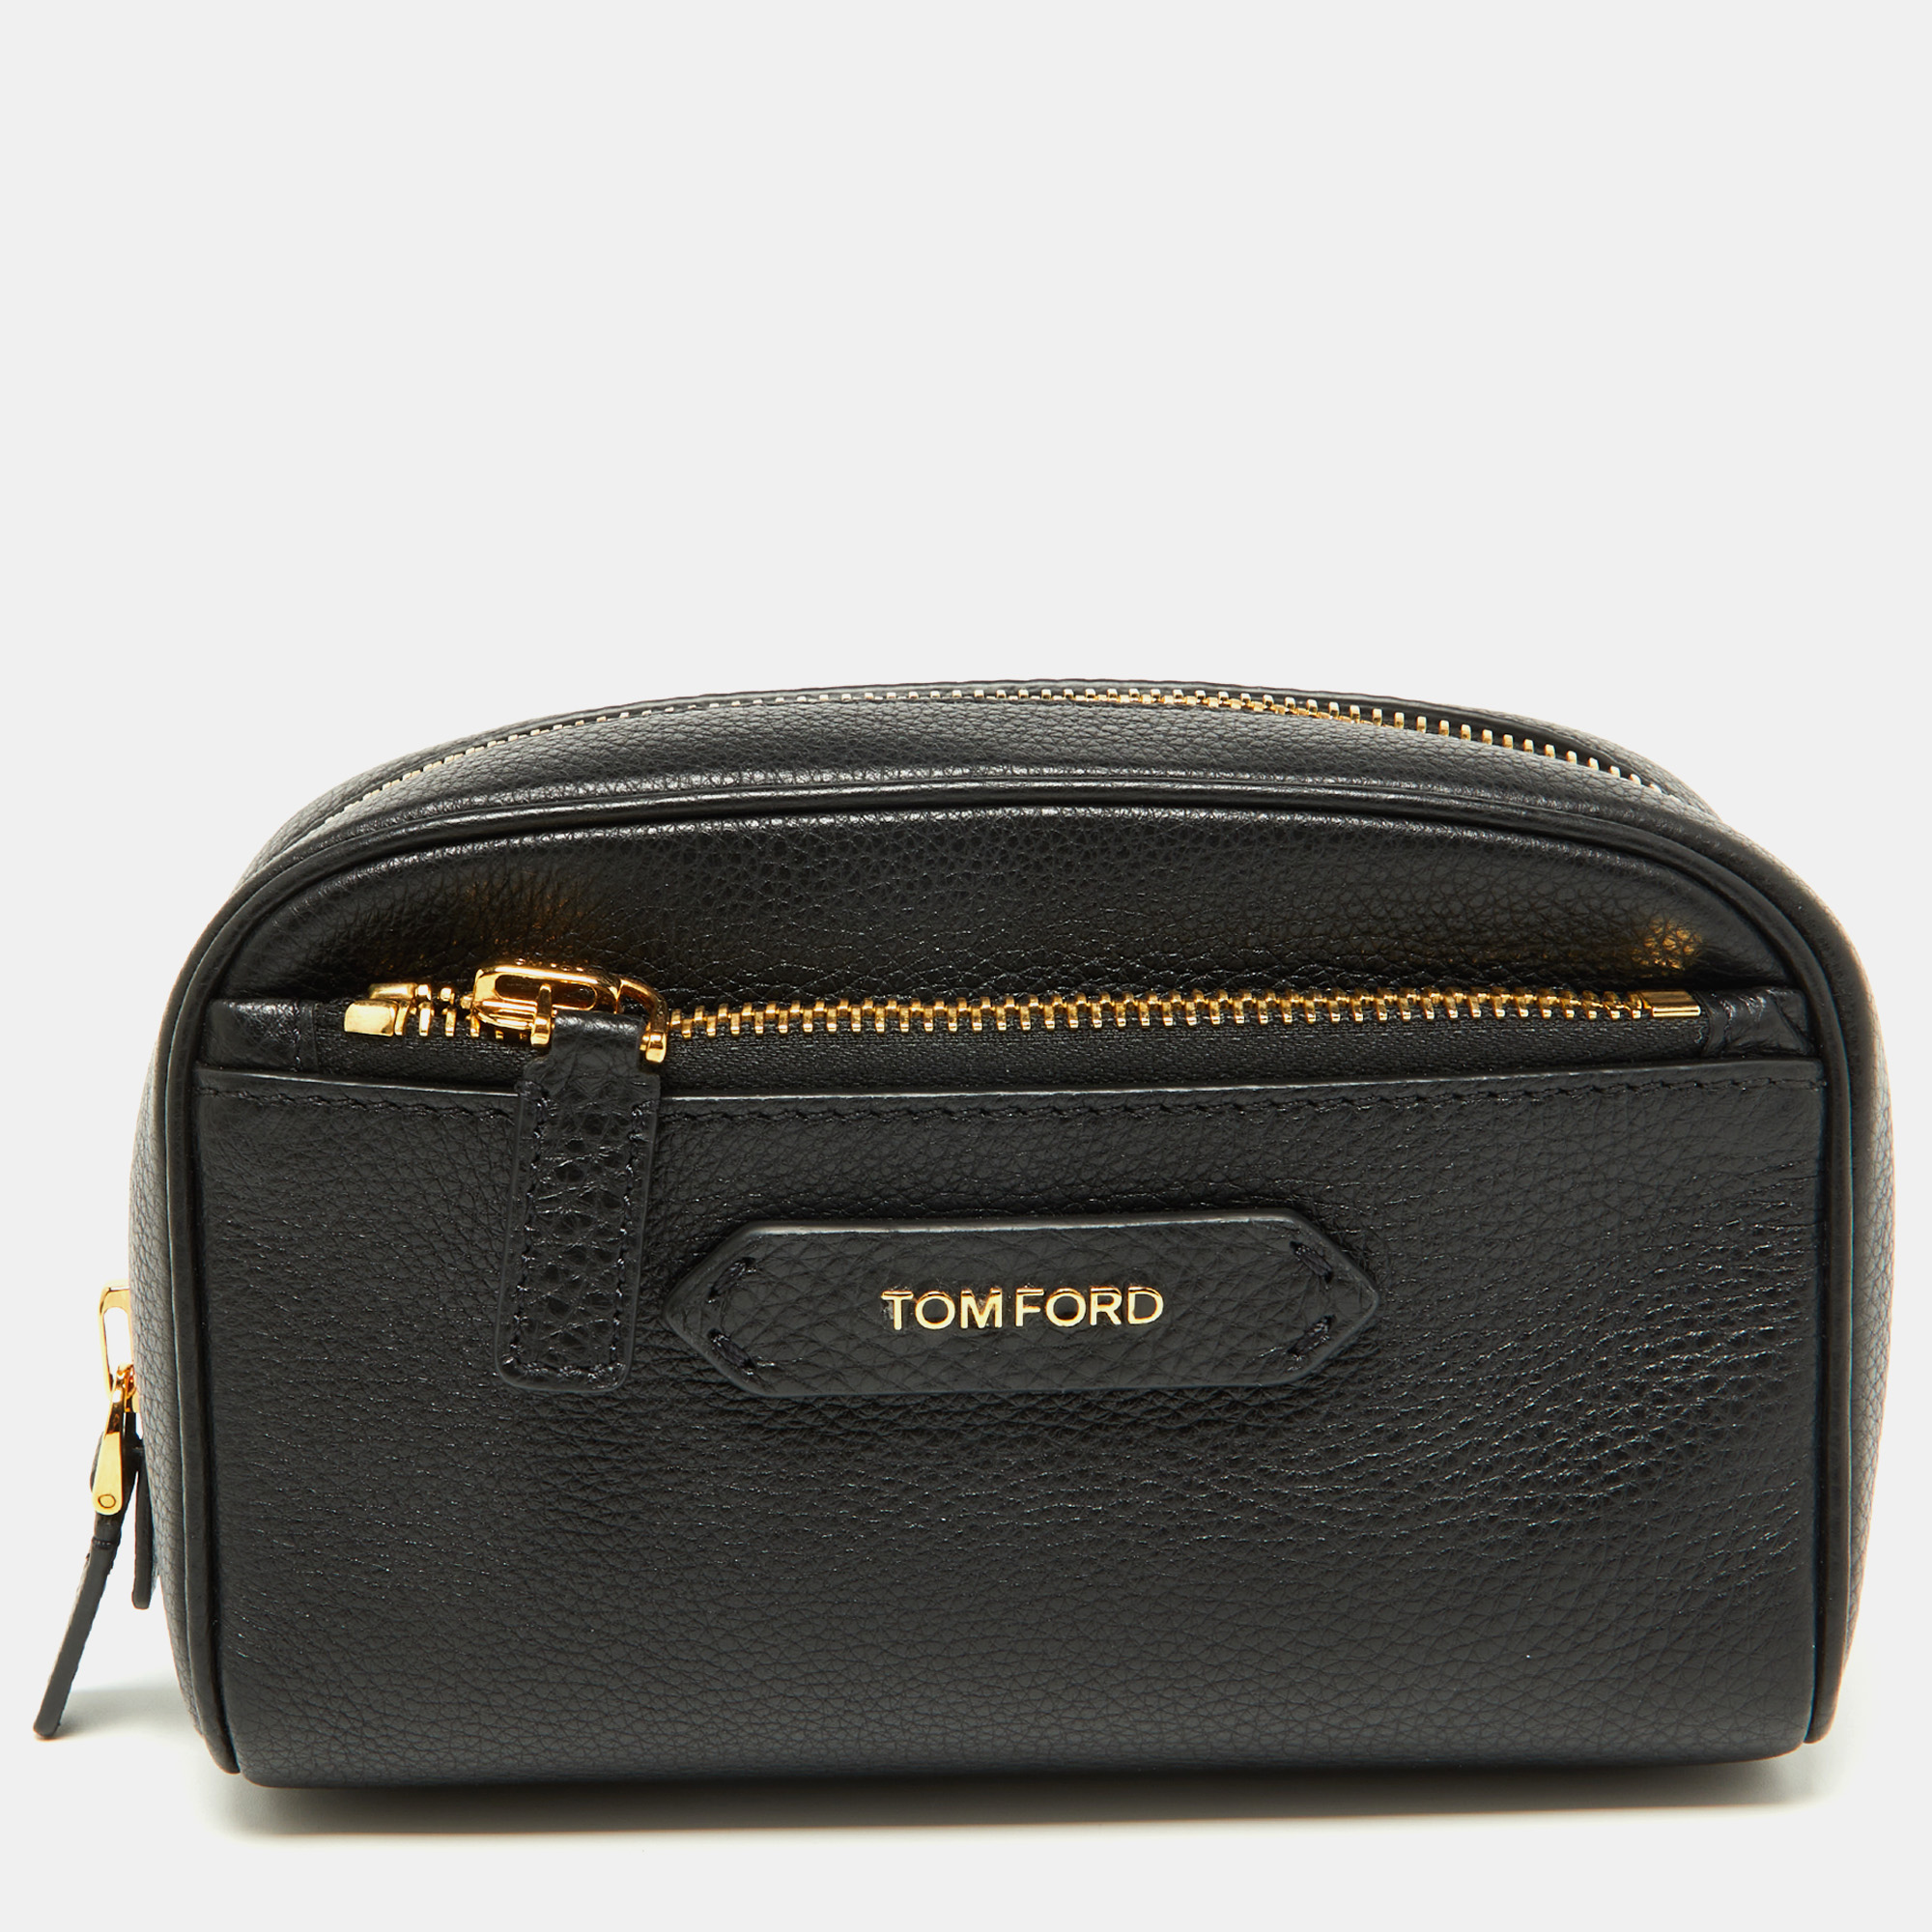 Tom Ford Vintage Logo Crystal-embellished Clutch Bag - Black